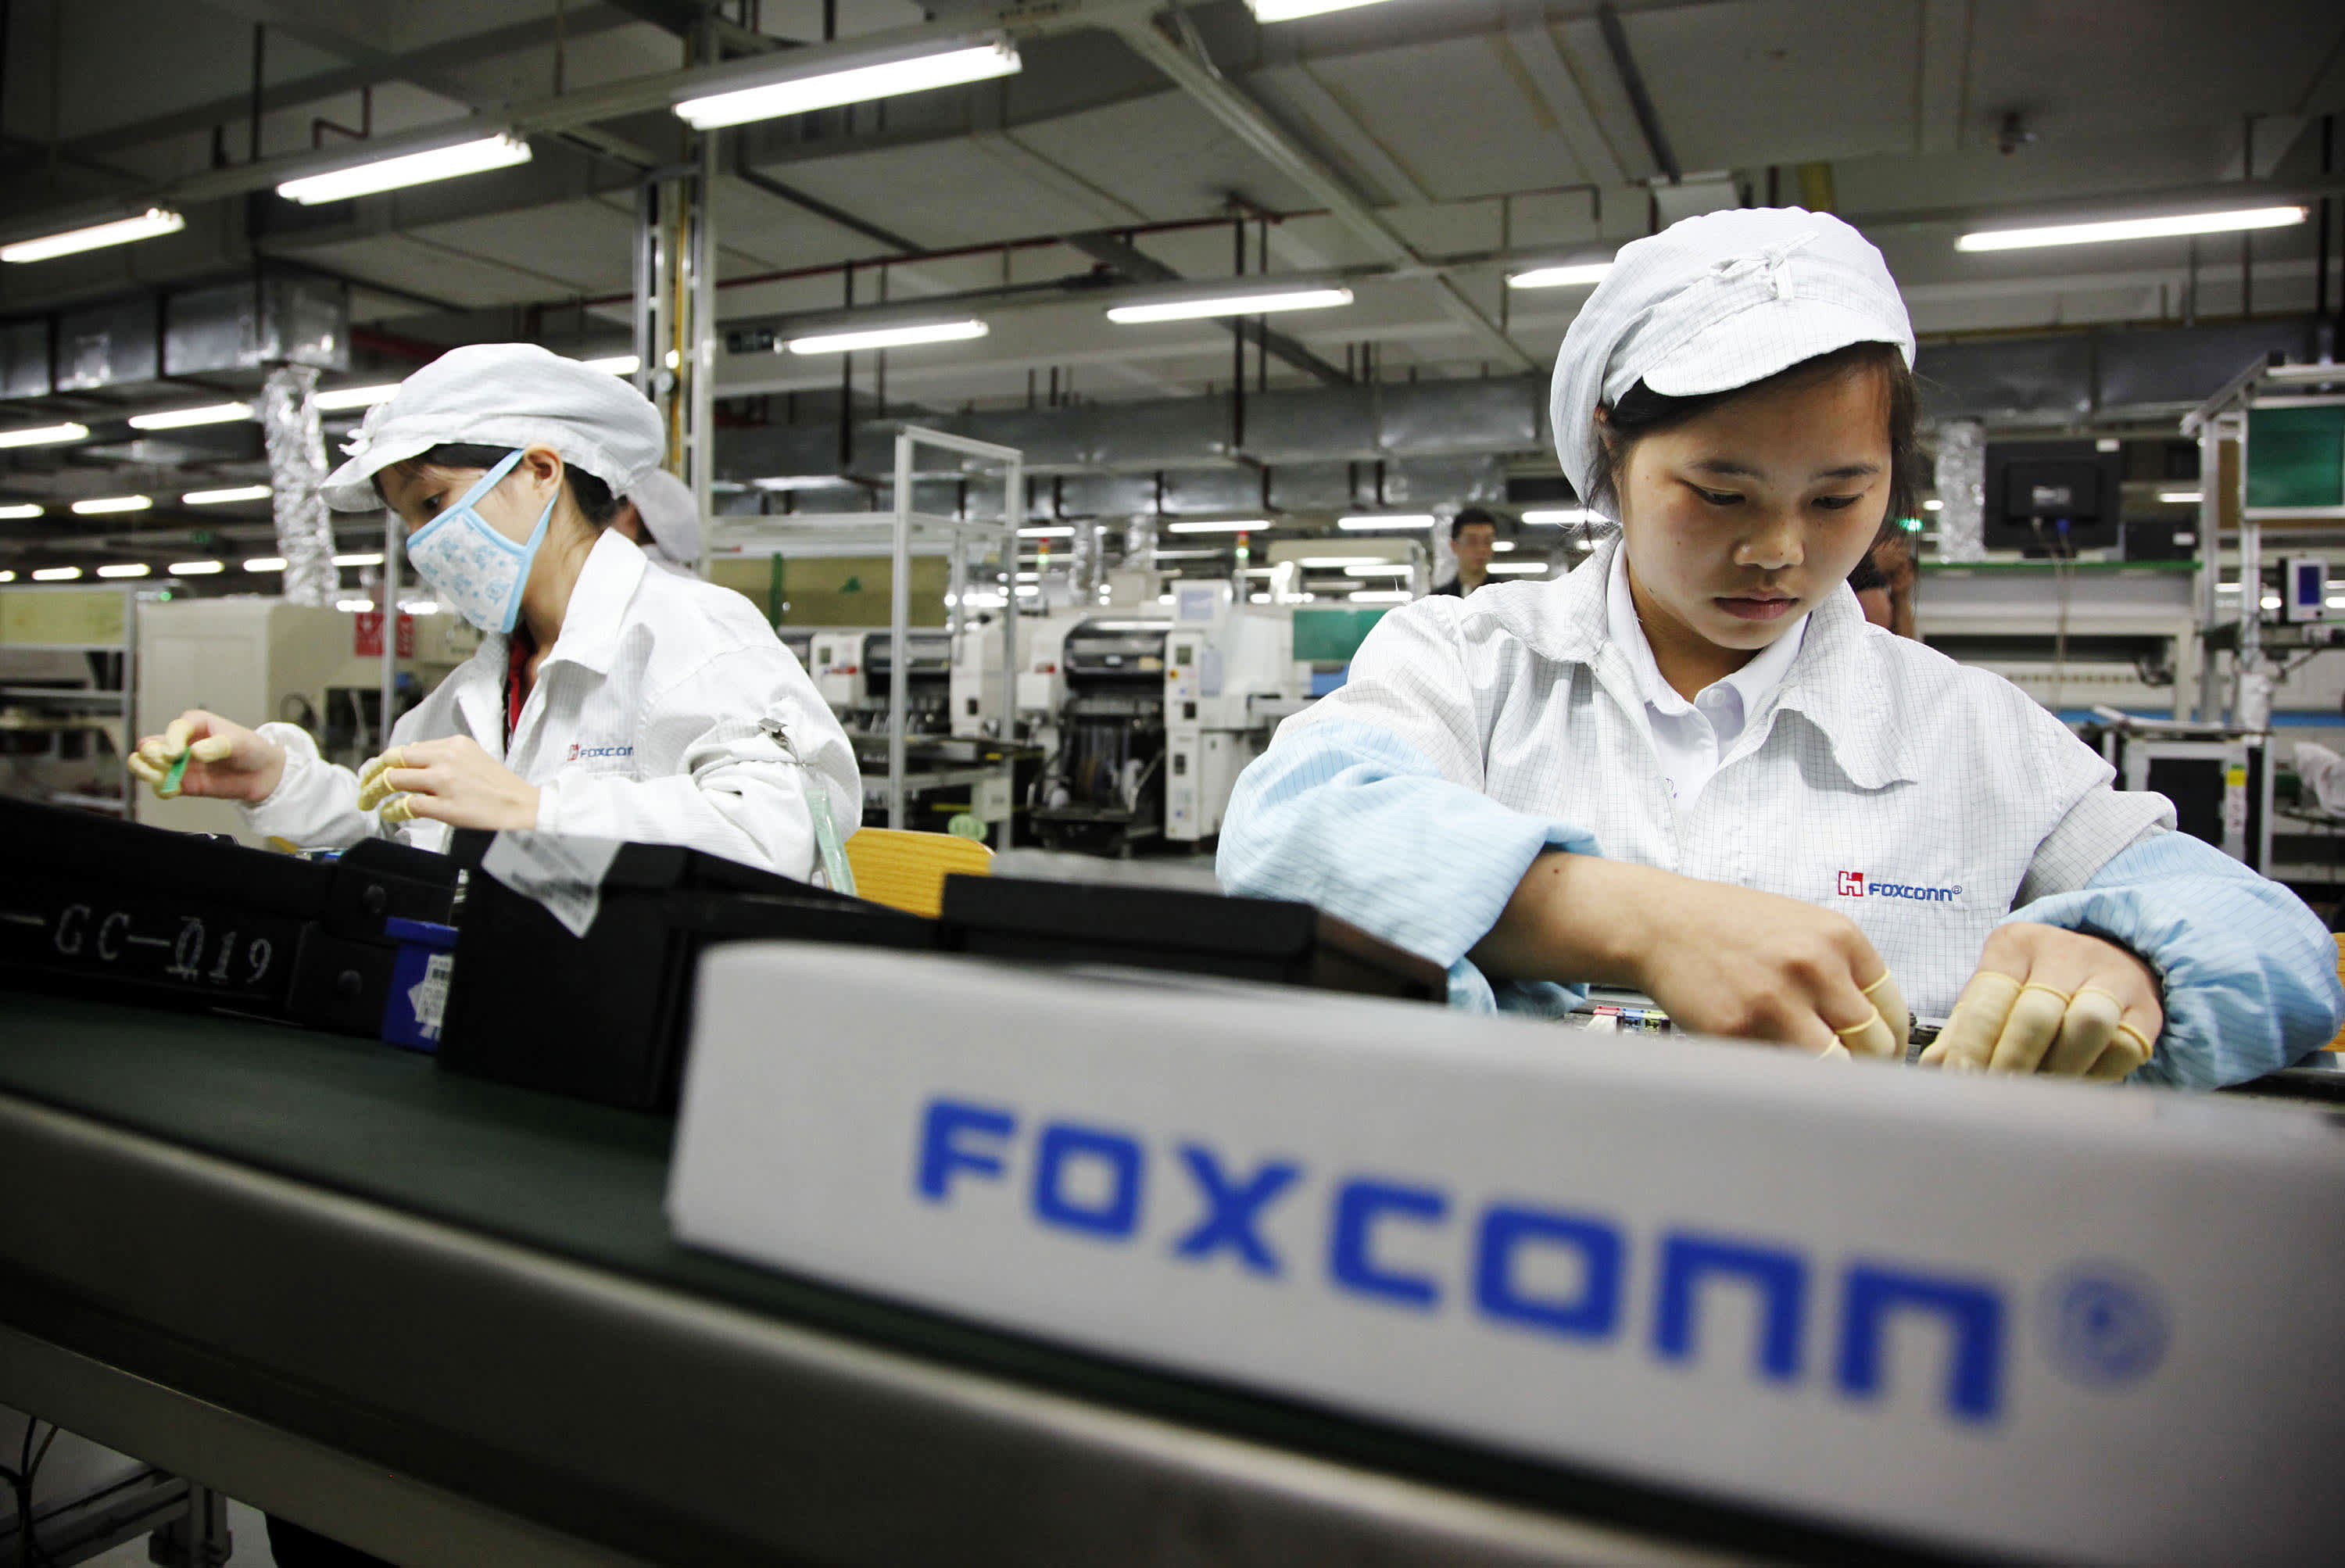 Tausende von Mitarbeitern in Foxconns größter Fabrik entlassen, iPhone-Lieferungen bedroht